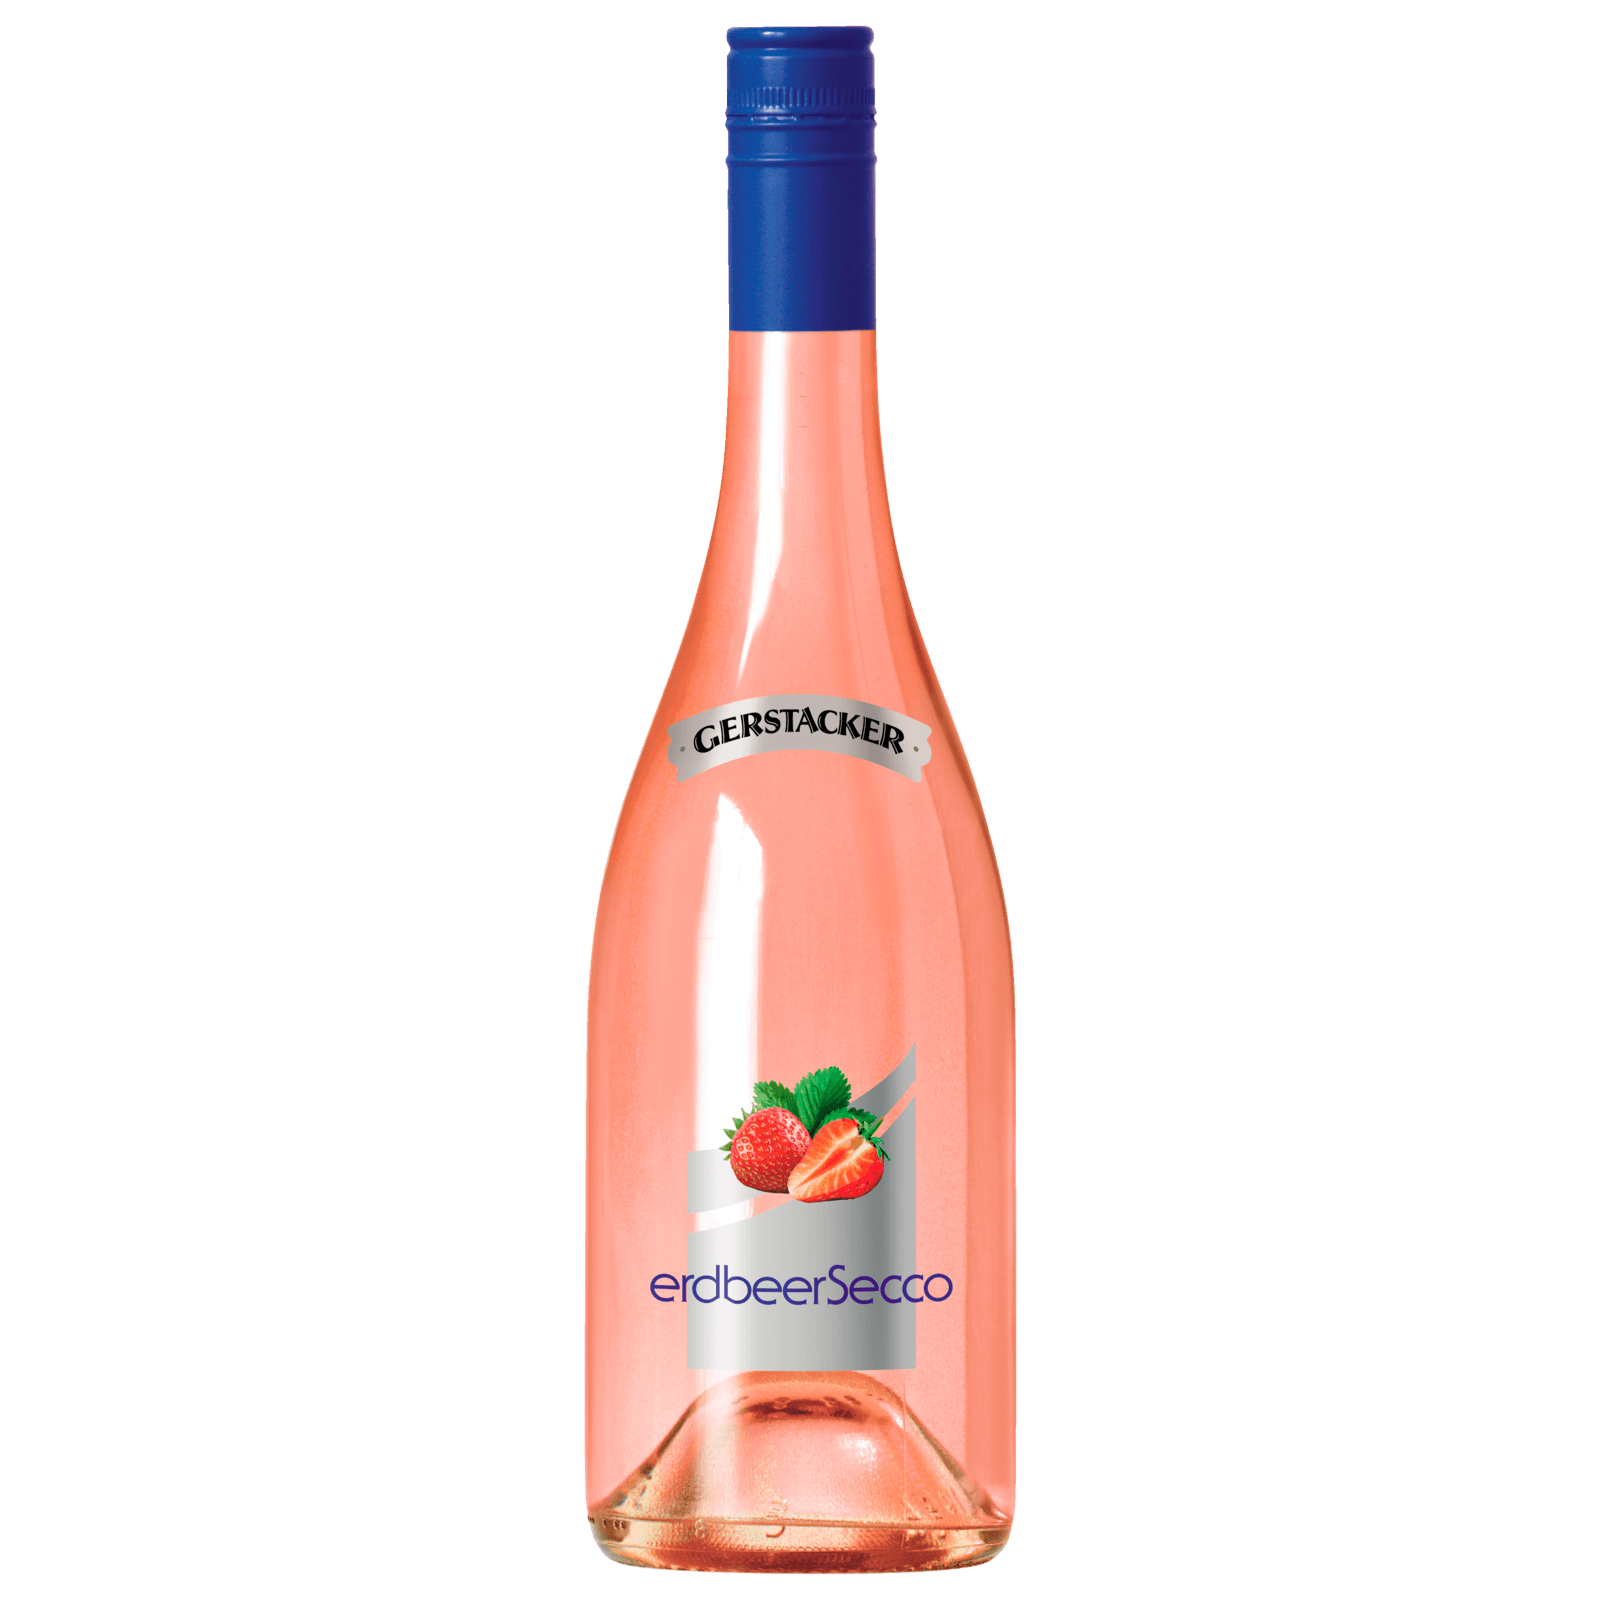 Gerstacker Erdbeer Secco 0,75l bei REWE online bestellen!